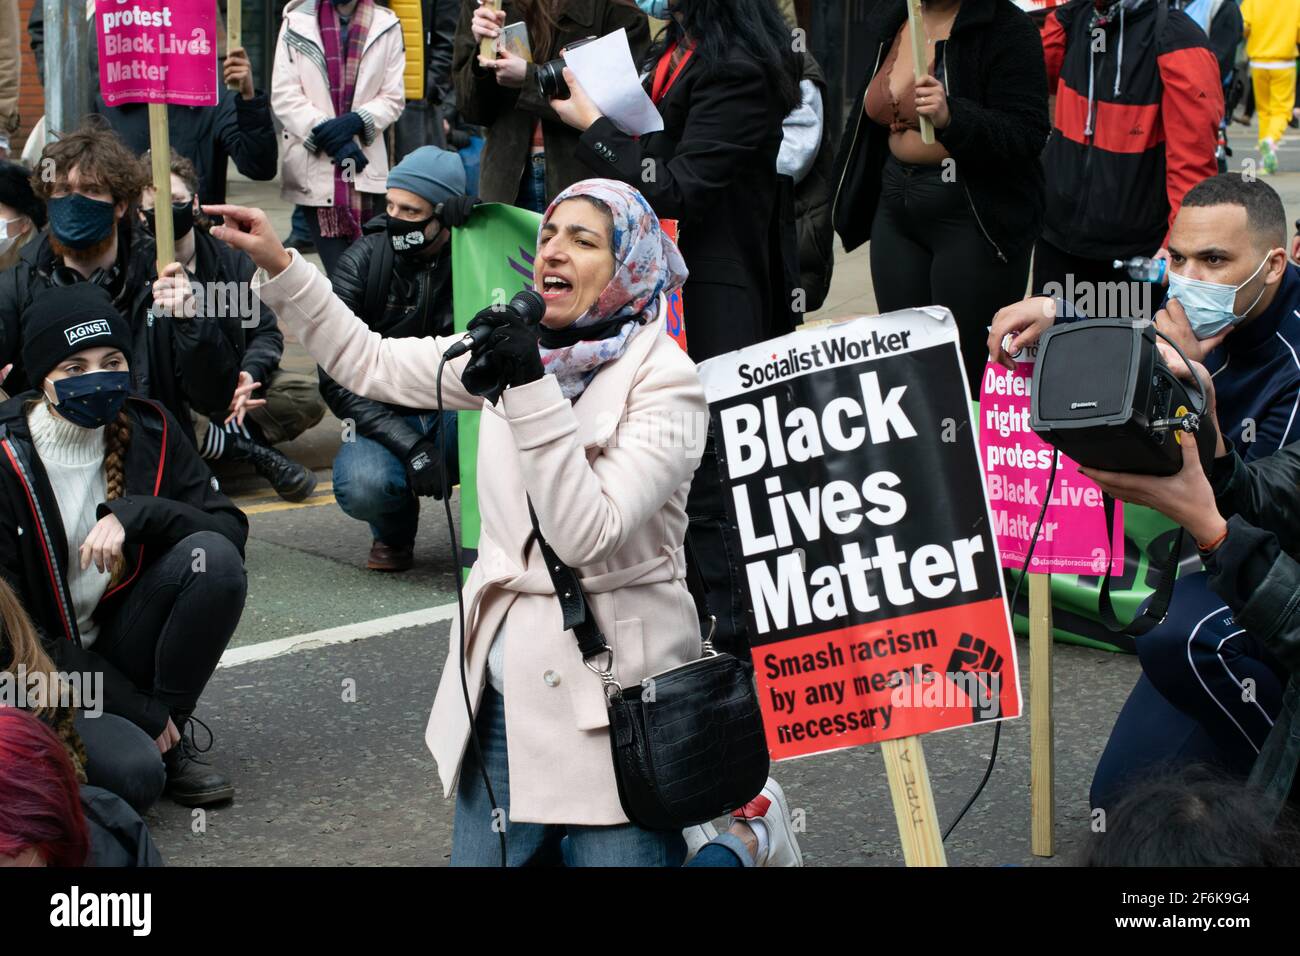 Matar a la protesta de Bill Manchester, Reino Unido durante el cierre nacional en Inglaterra. Demostrador delante de un cartel de Black Lives Matter. Foto de stock